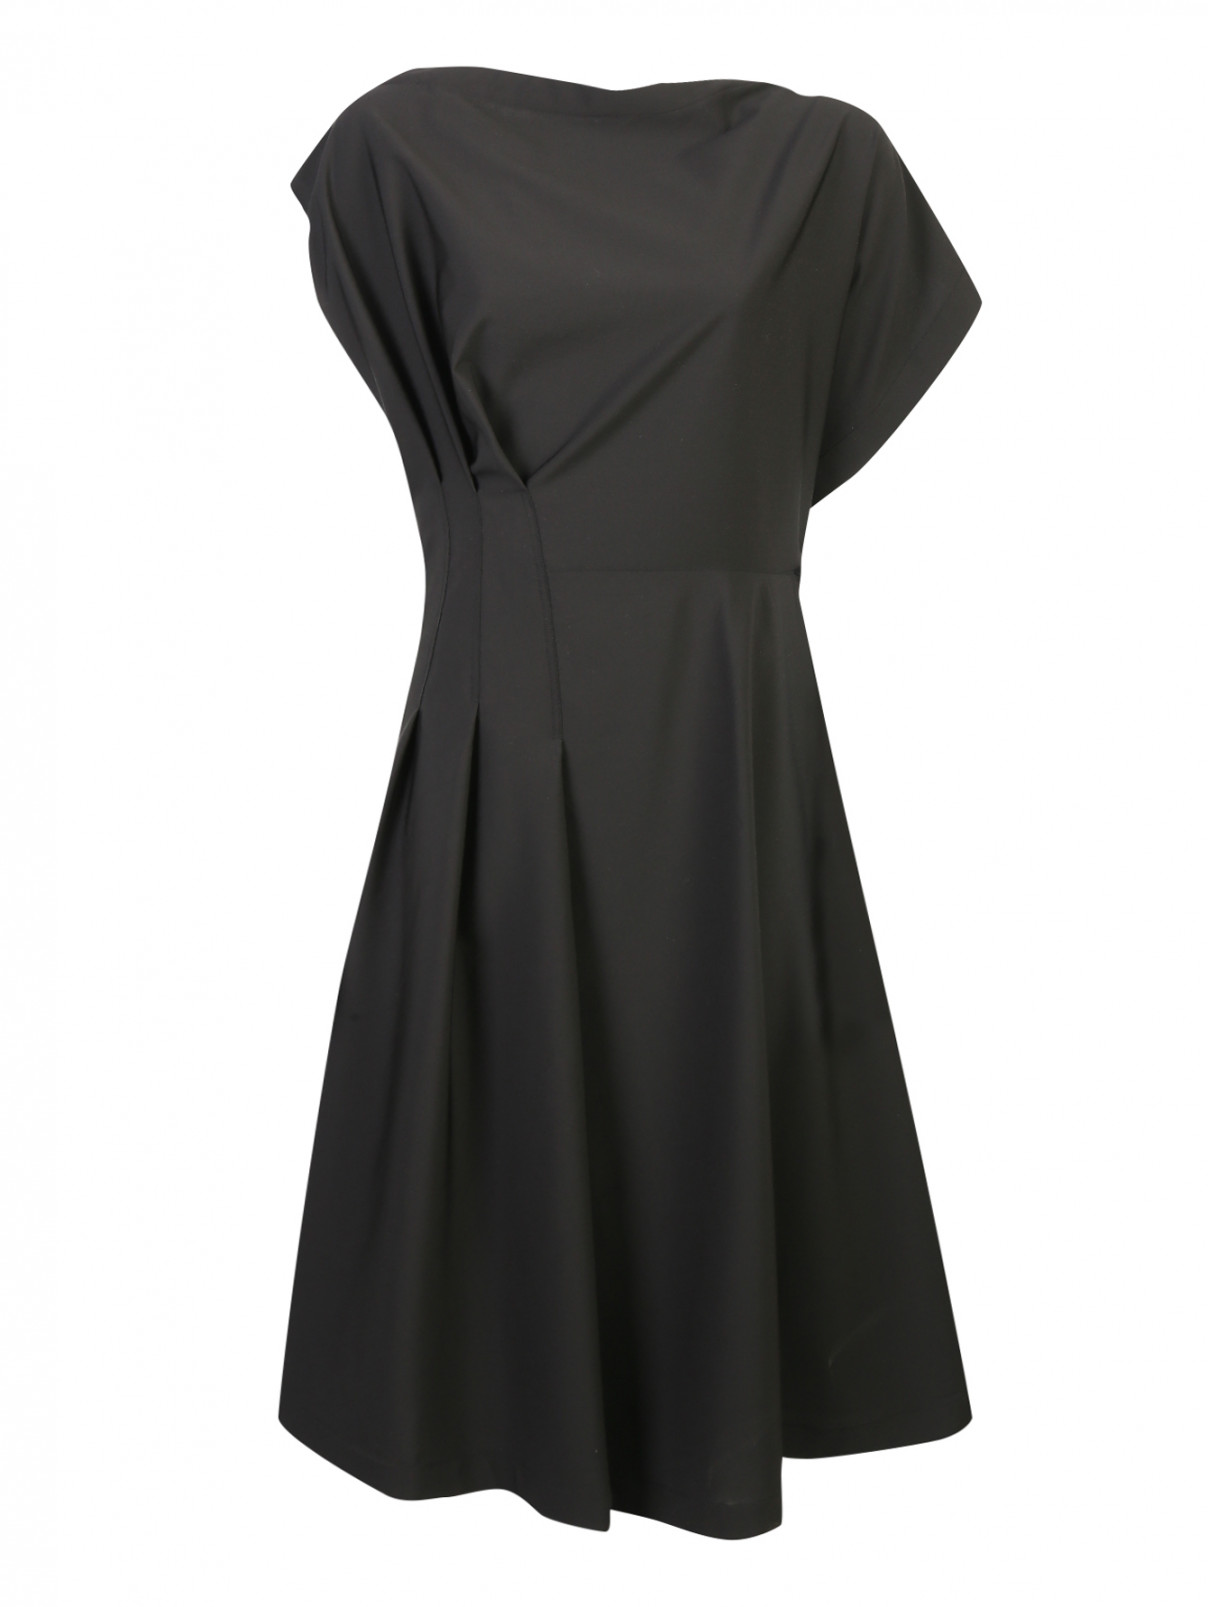 Платье, на запах, из шерсти Jil Sander  –  Общий вид  – Цвет:  Черный